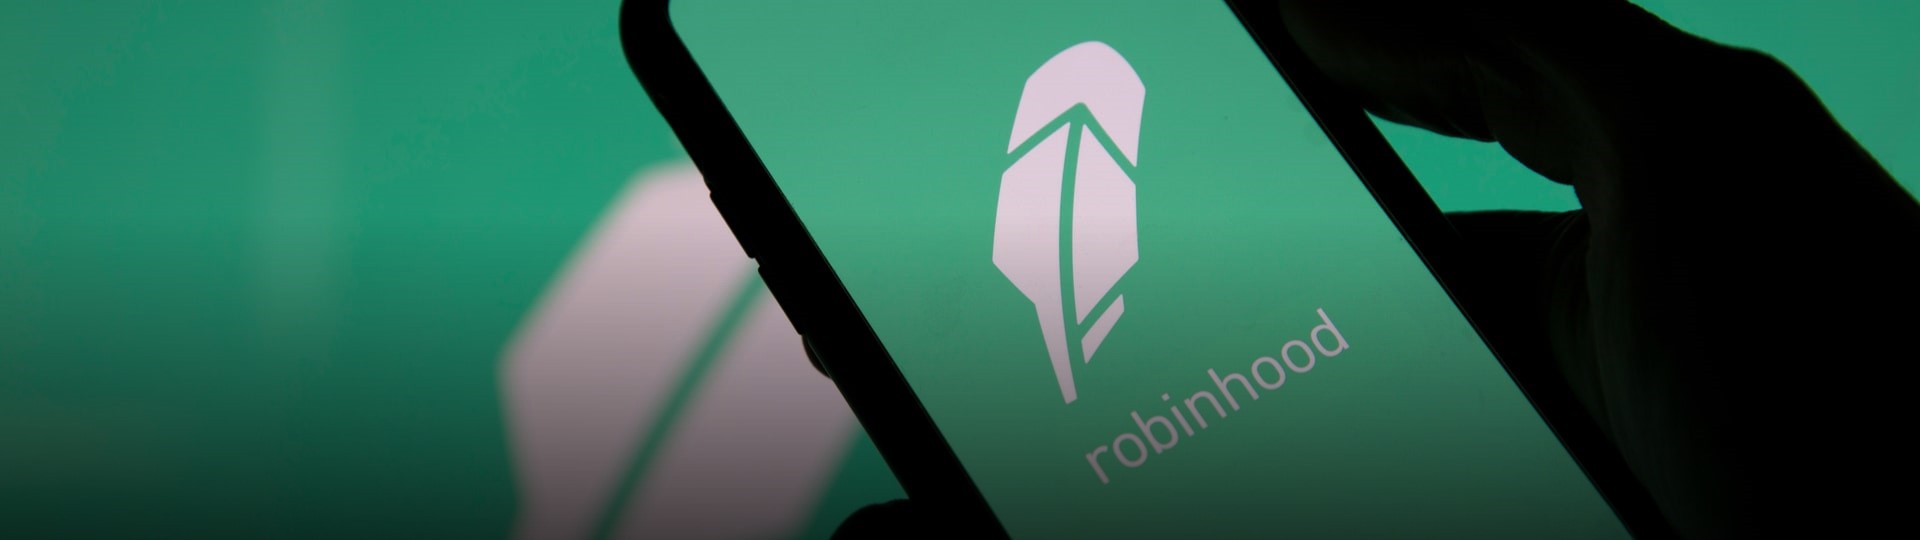 Robinhood chce vstupem na burzu získat až 2,3 miliardy dolarů